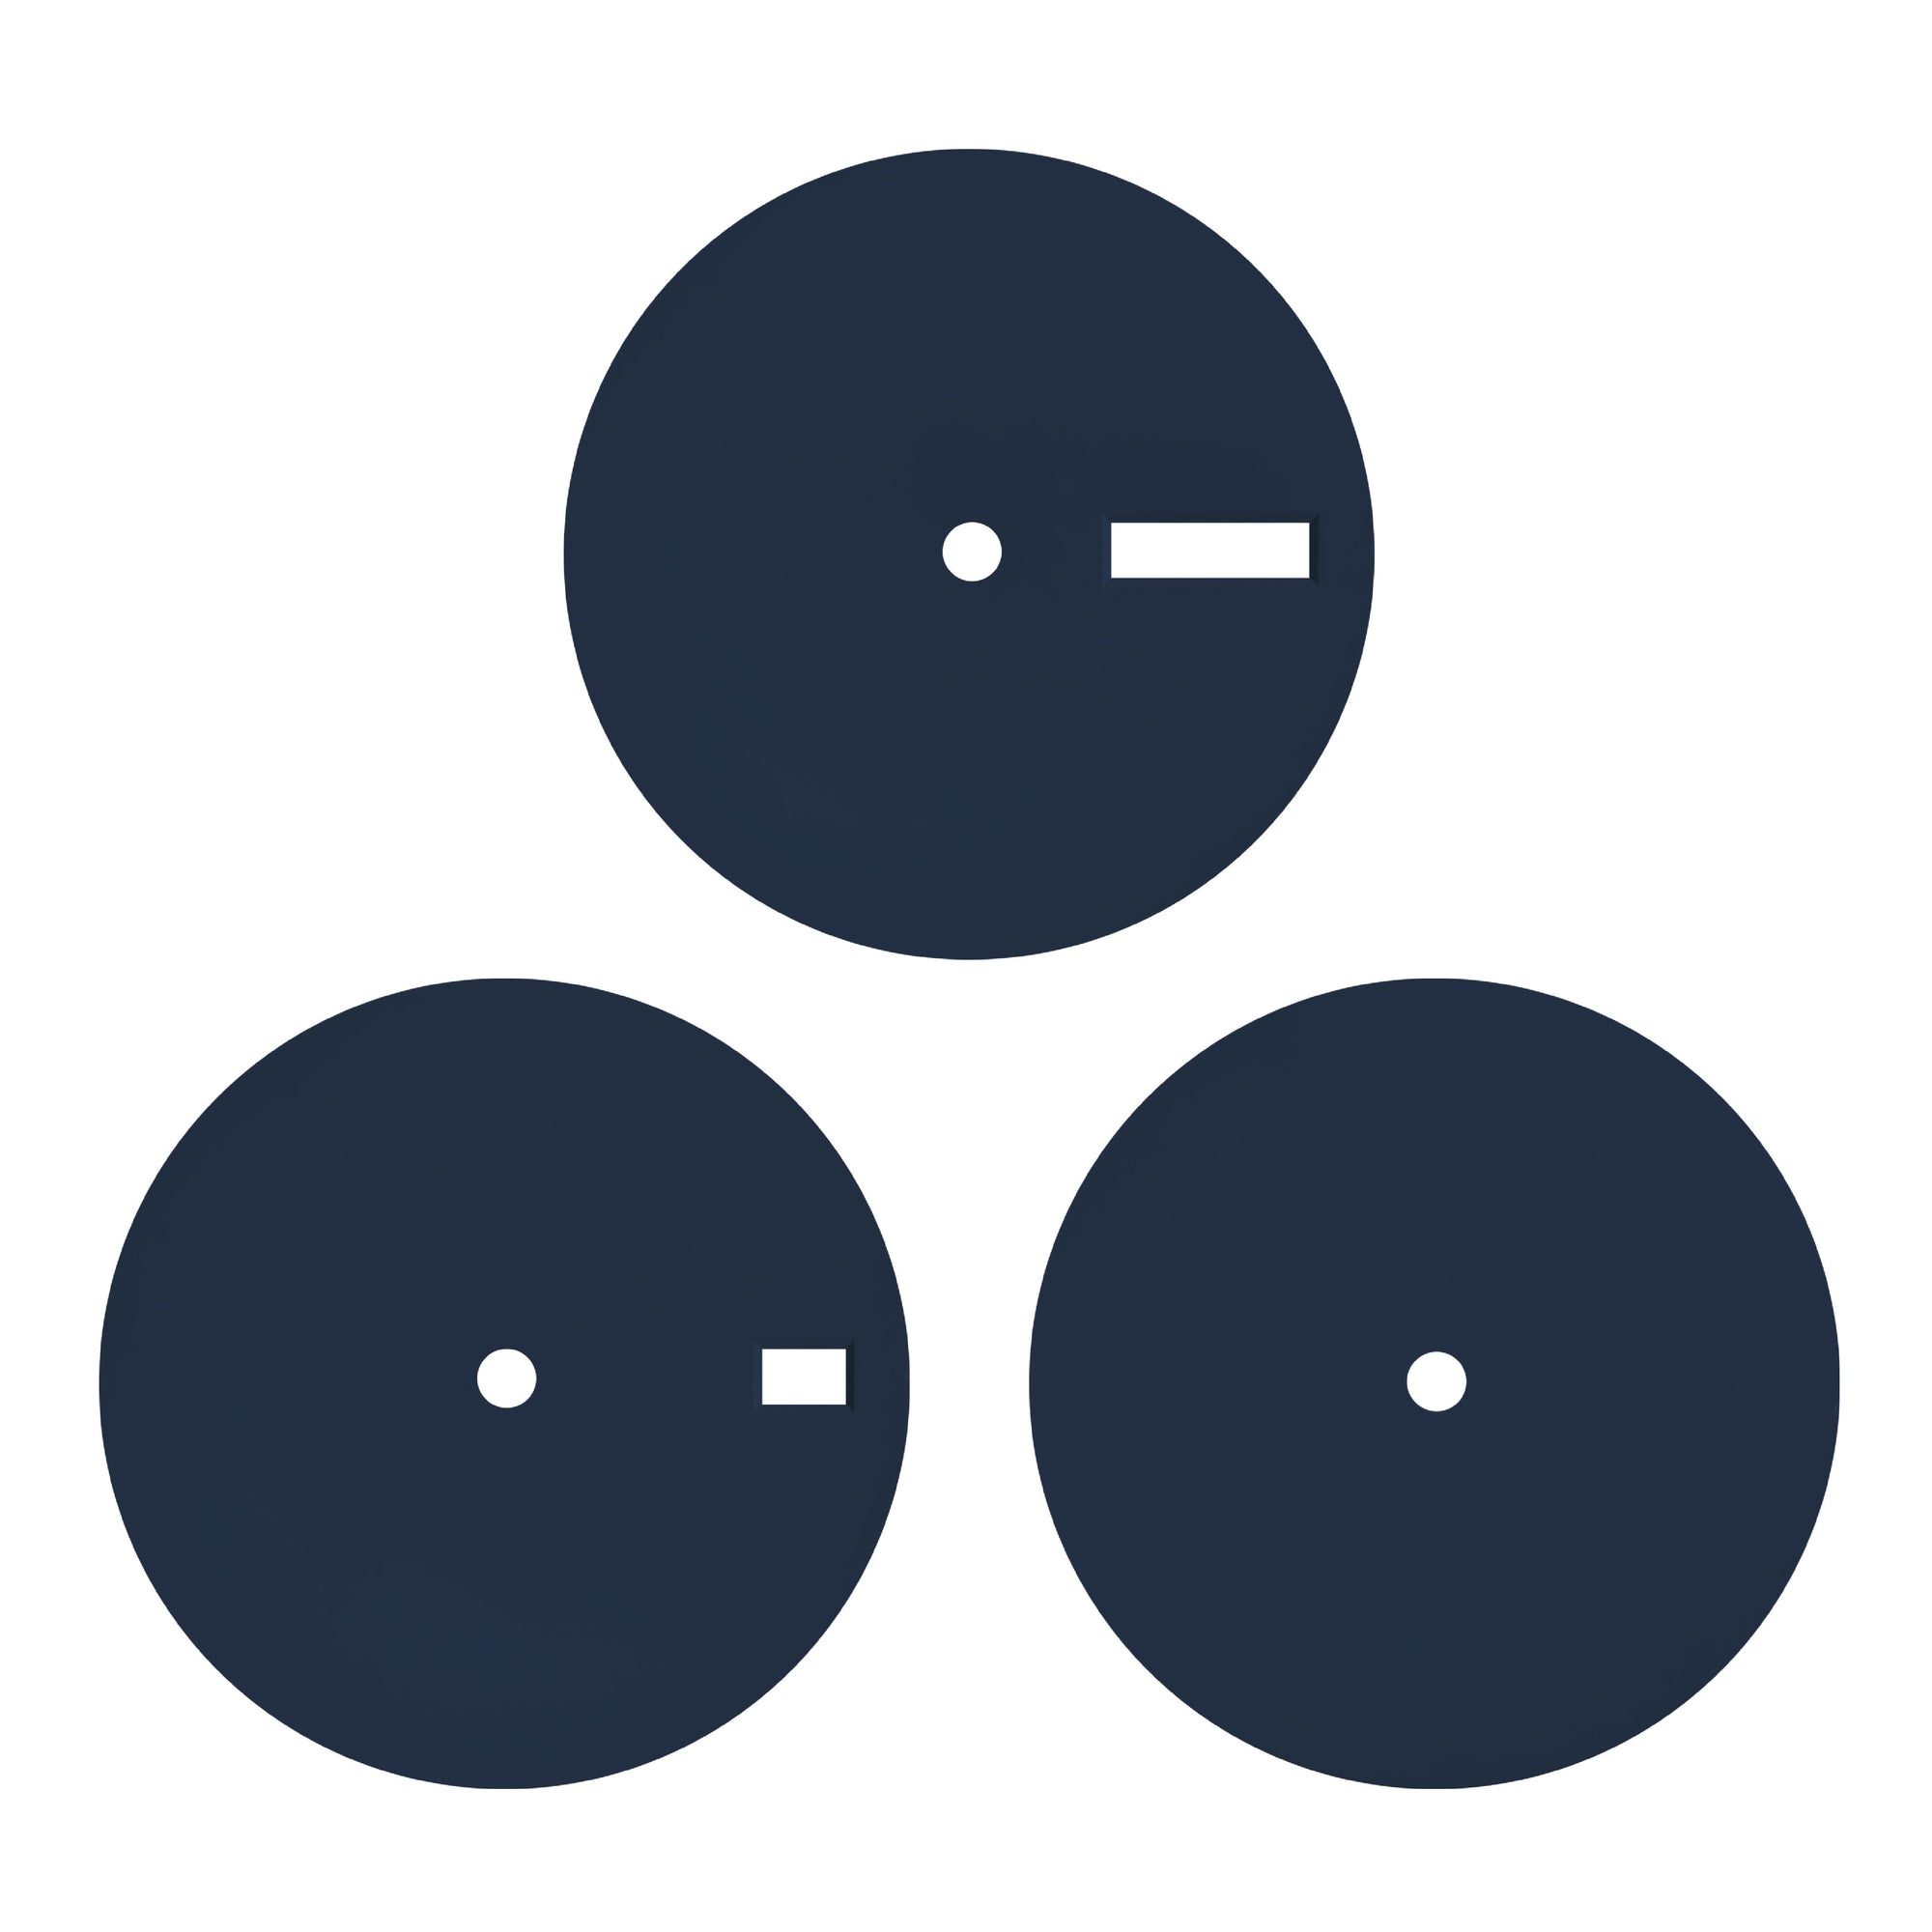 plain black circle